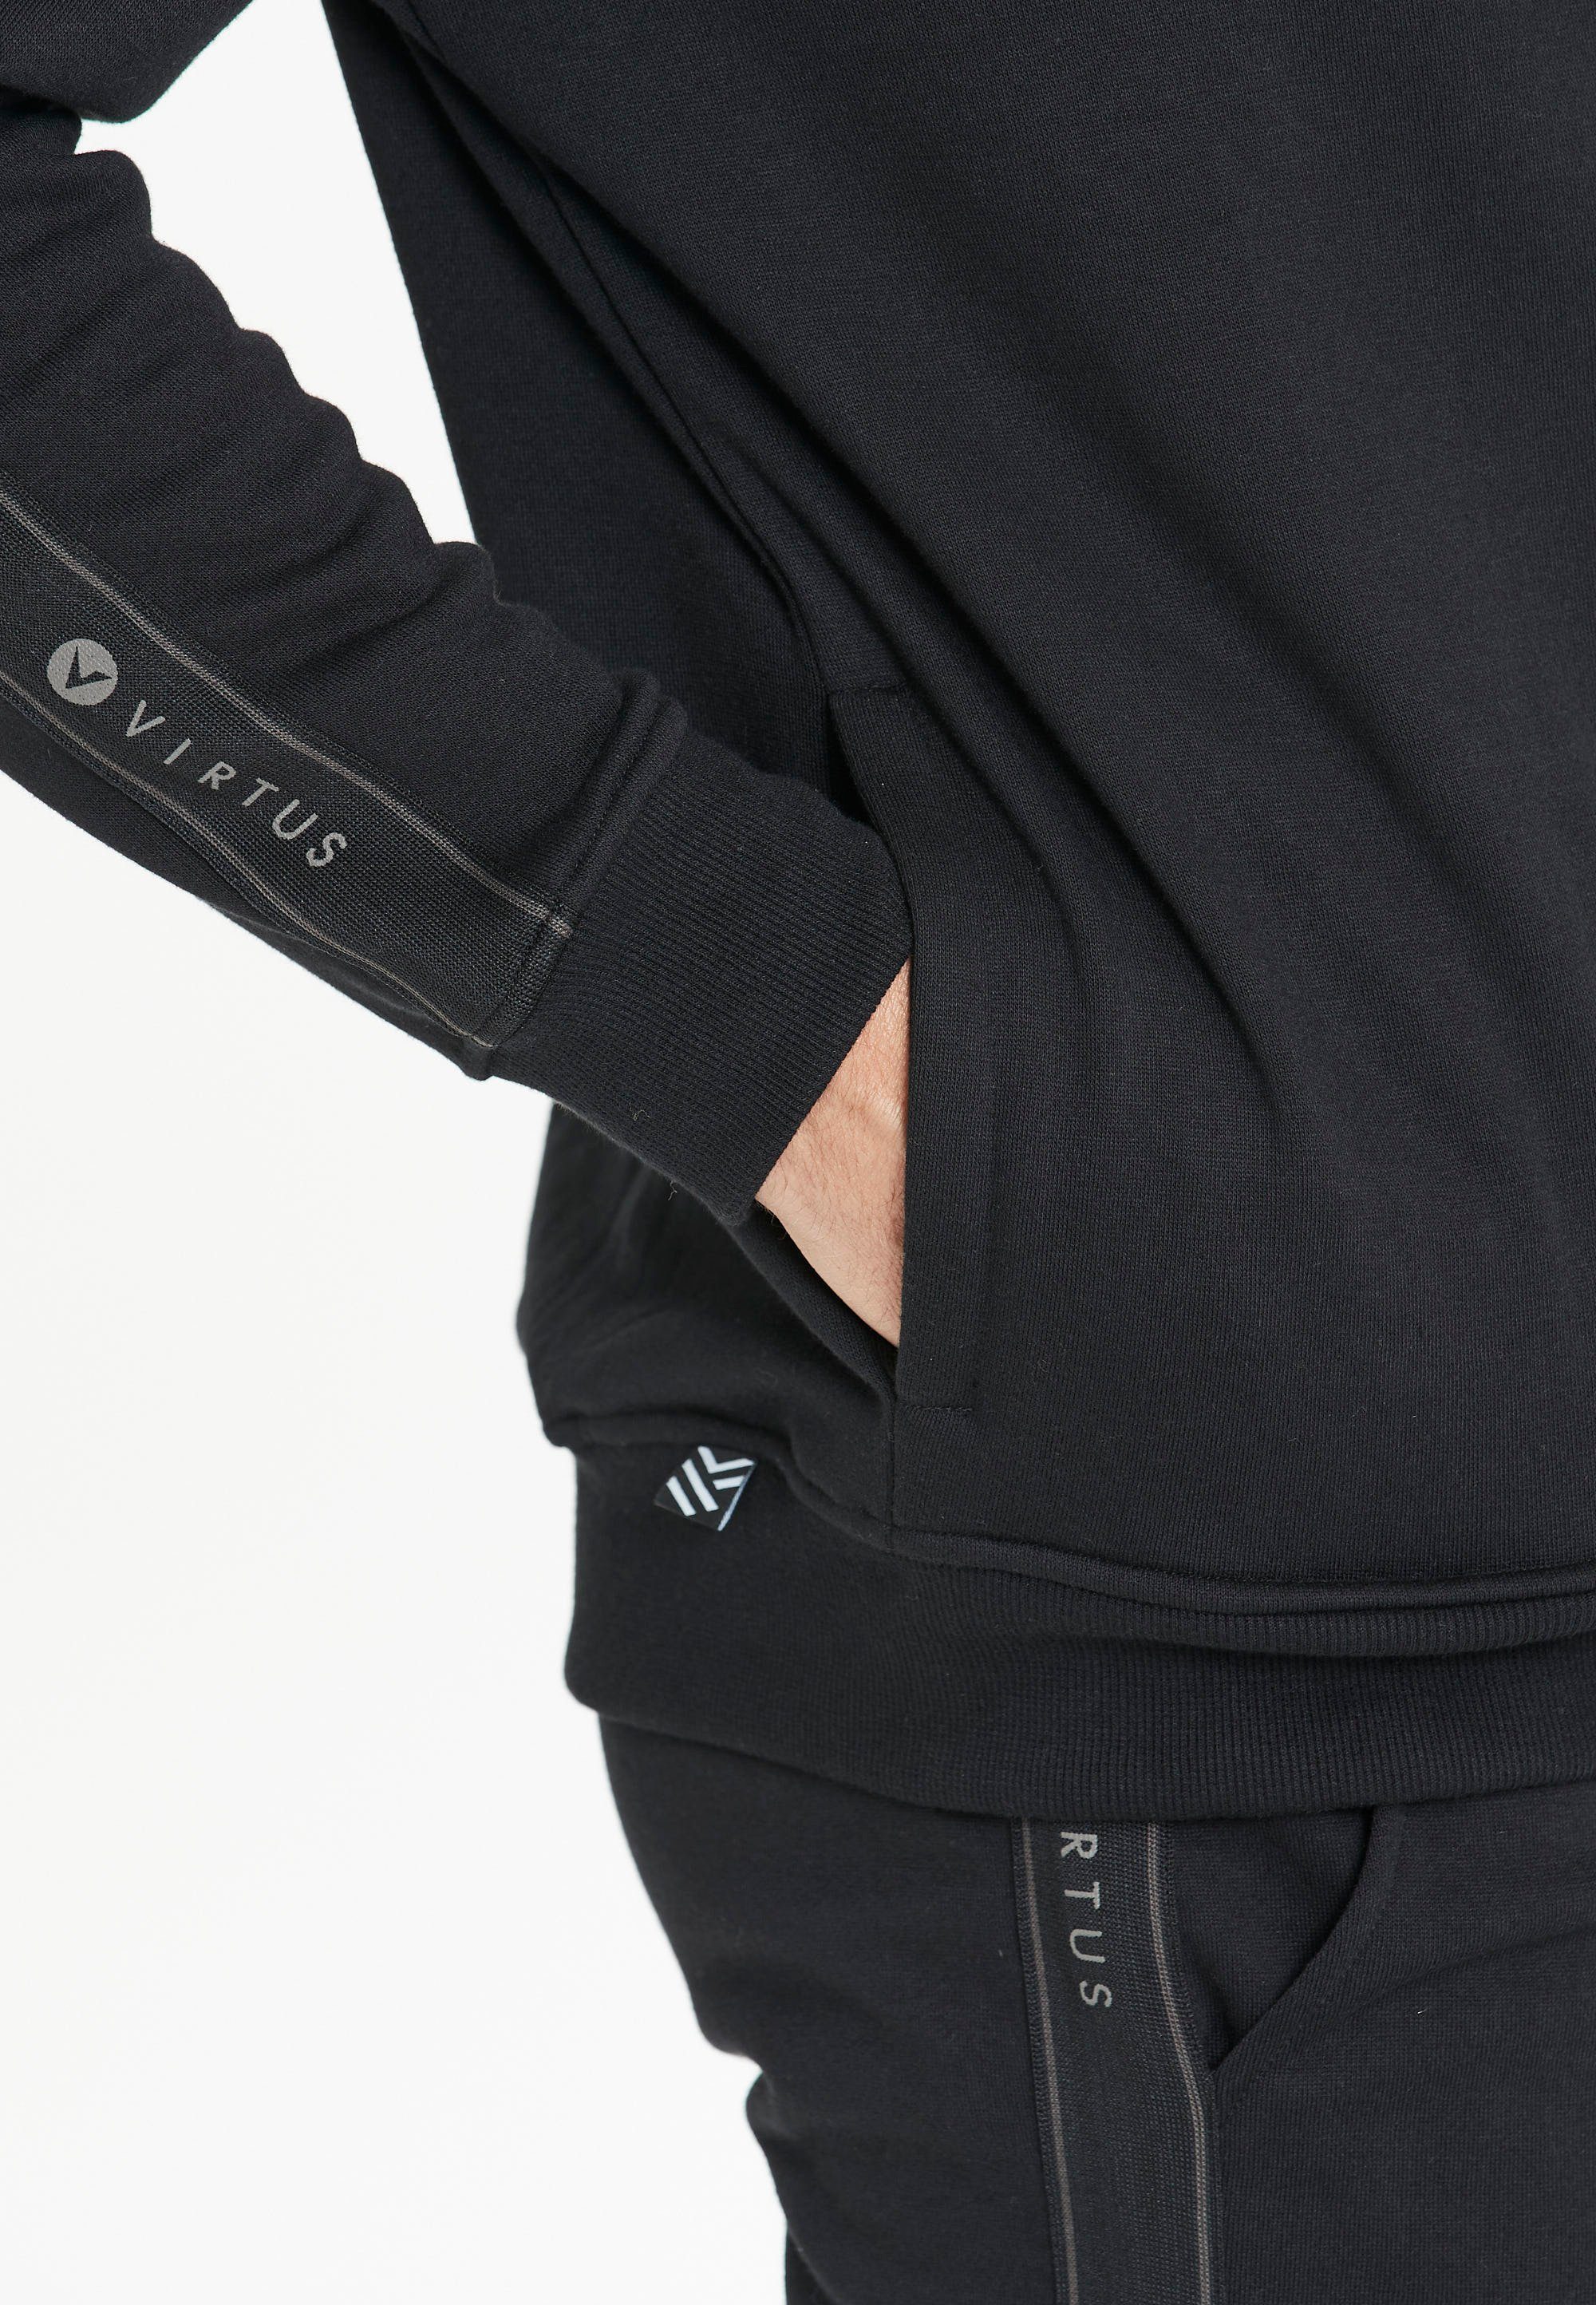 Lernow in Virtus Sweatshirt Design schwarz-schwarz sportlichem